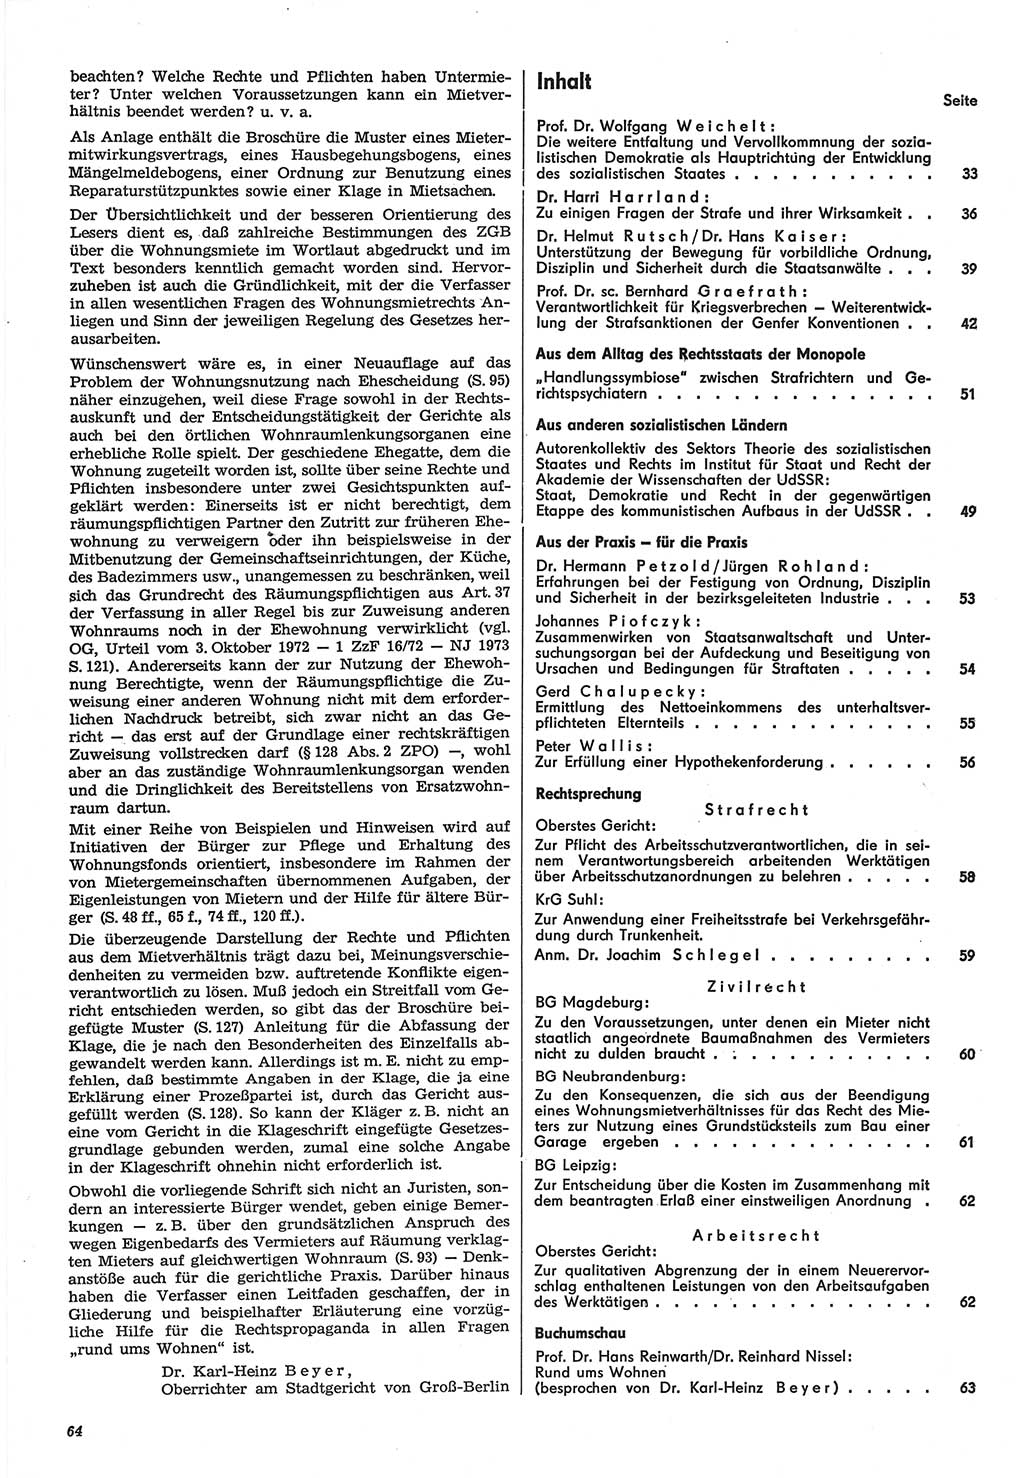 Neue Justiz (NJ), Zeitschrift für Recht und Rechtswissenschaft-Zeitschrift, sozialistisches Recht und Gesetzlichkeit, 31. Jahrgang 1977, Seite 64 (NJ DDR 1977, S. 64)